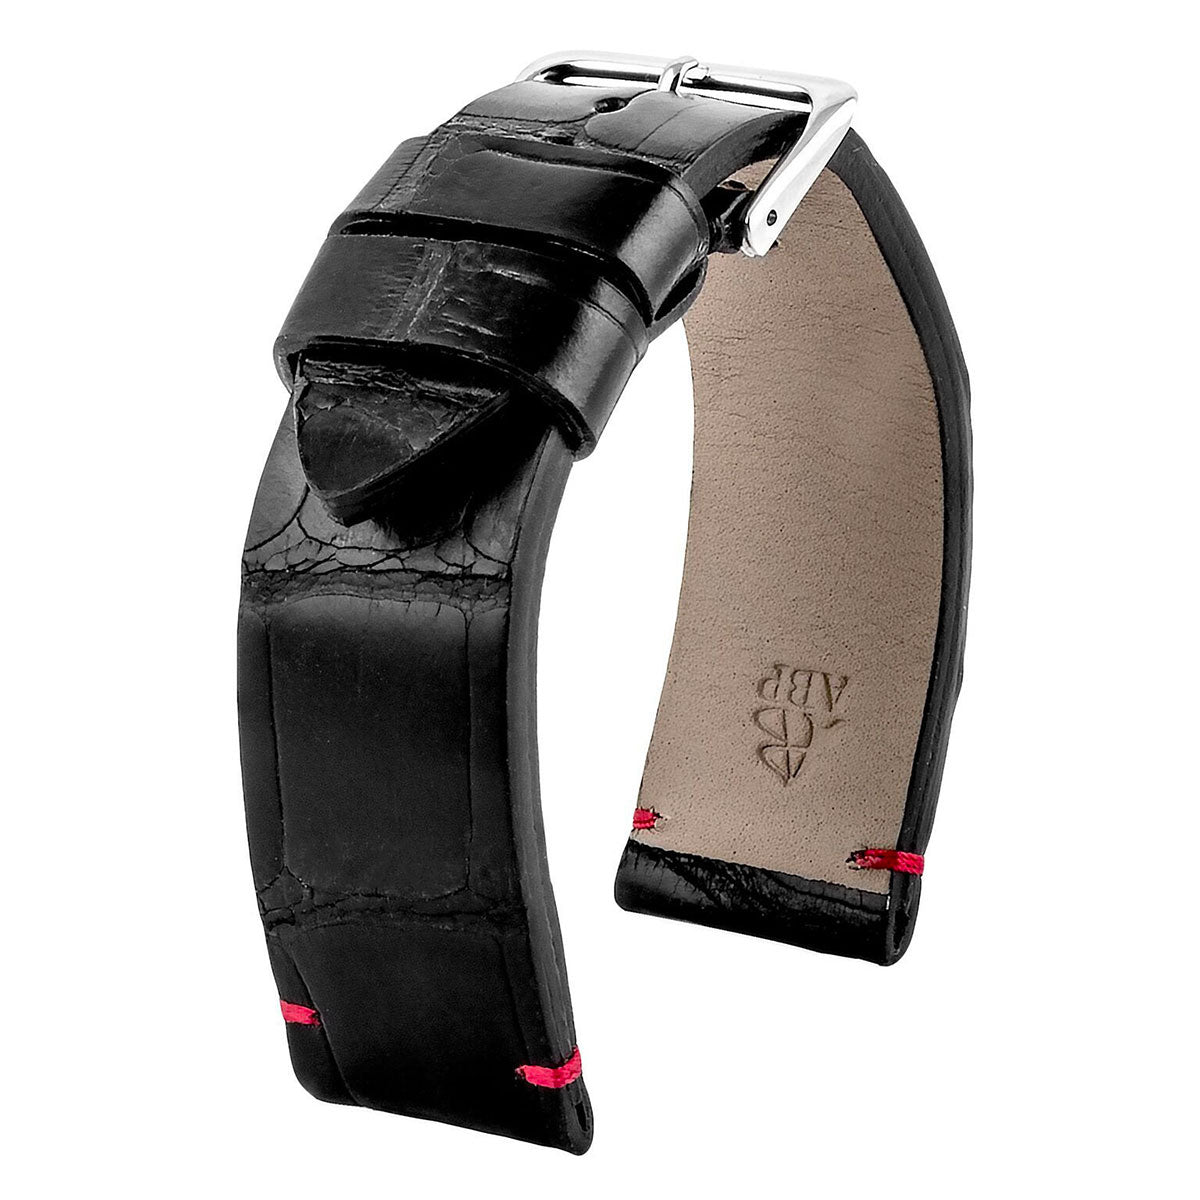 Breitling Navitimer - Bracelet montre cuir - Alligator tannage waxé (noir, marron) - watch band leather strap - ABP Concept -